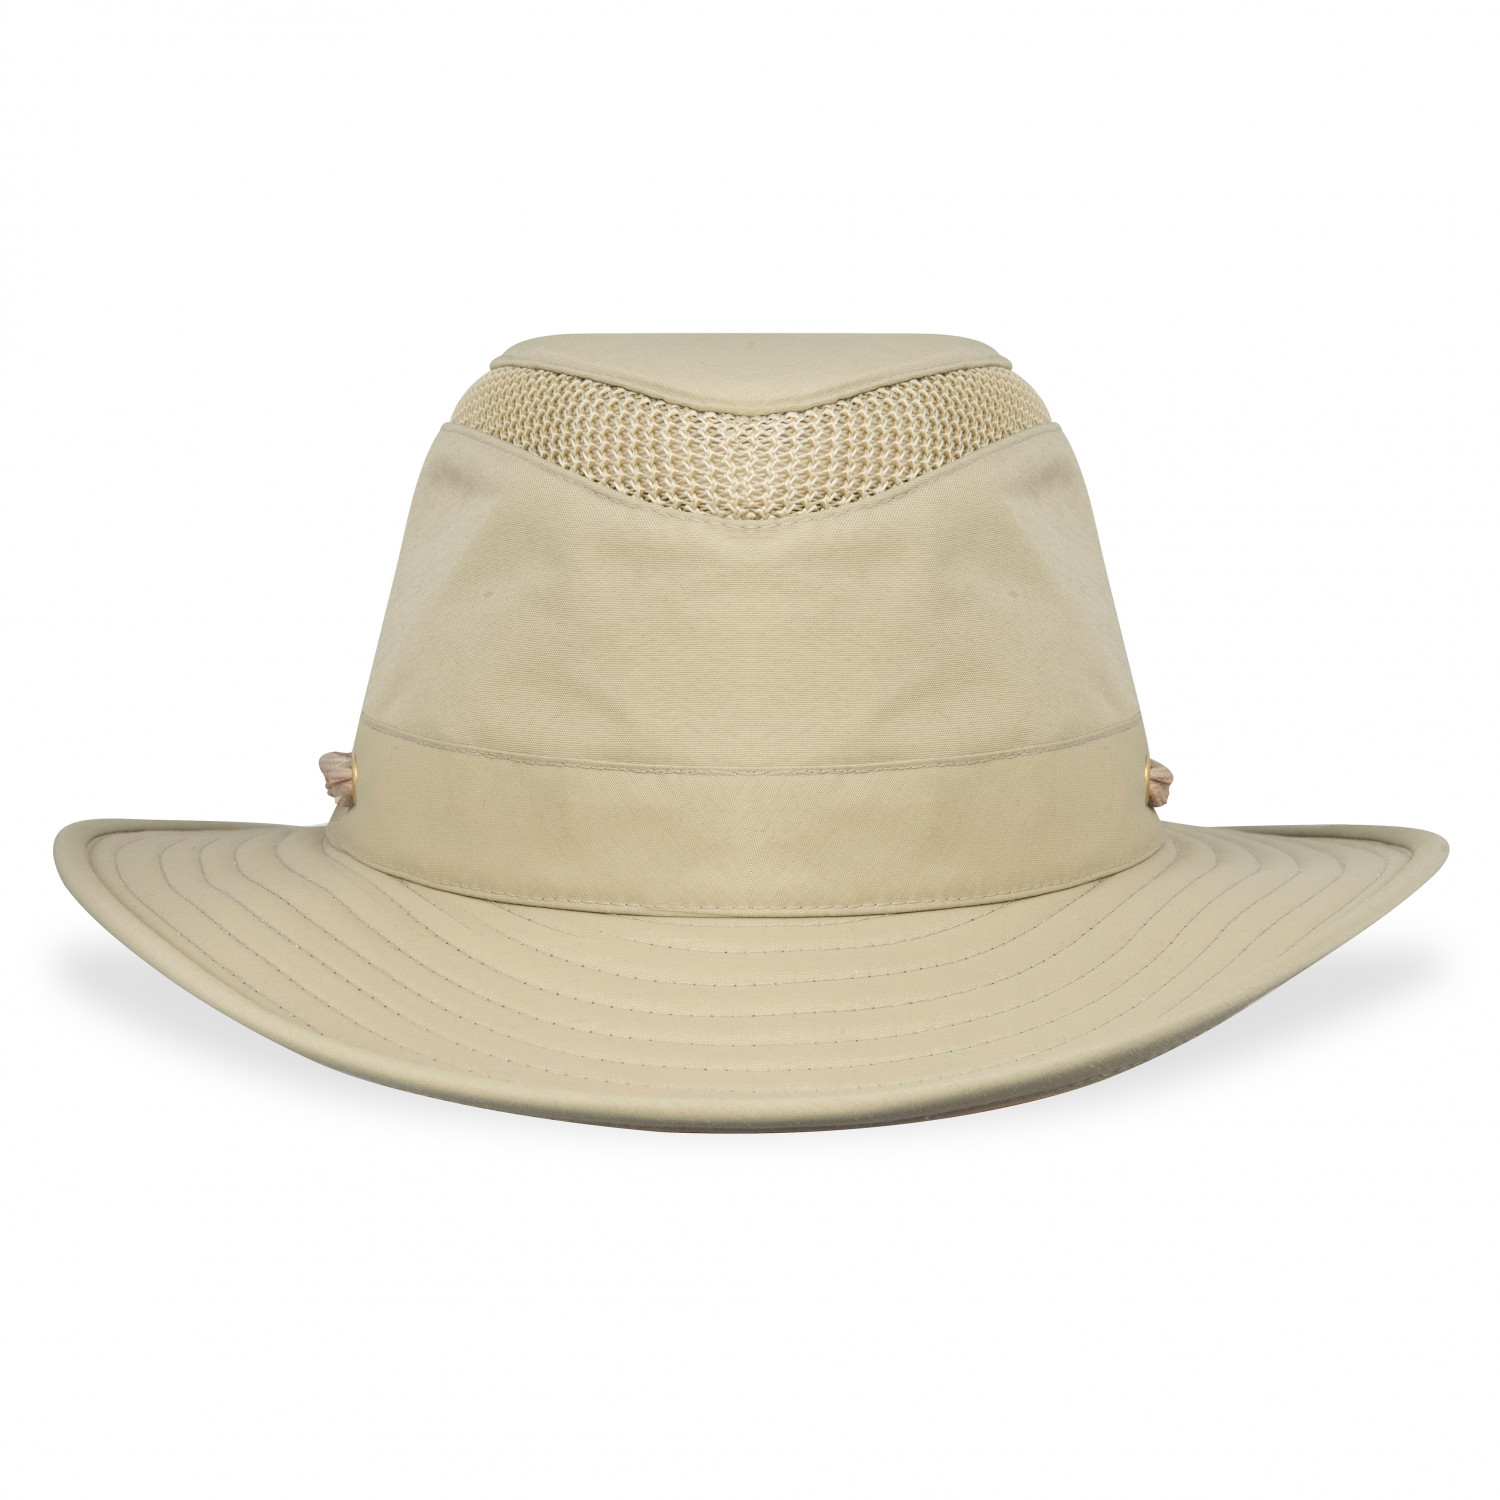 Кепка Tilley Airflo Broad Brim Hat, цвет Khaki/Olive летняя вязаная шляпа рыбака с вырезами шляпа от солнца и солнца универсальная летняя шляпа от солнца уличные панамы